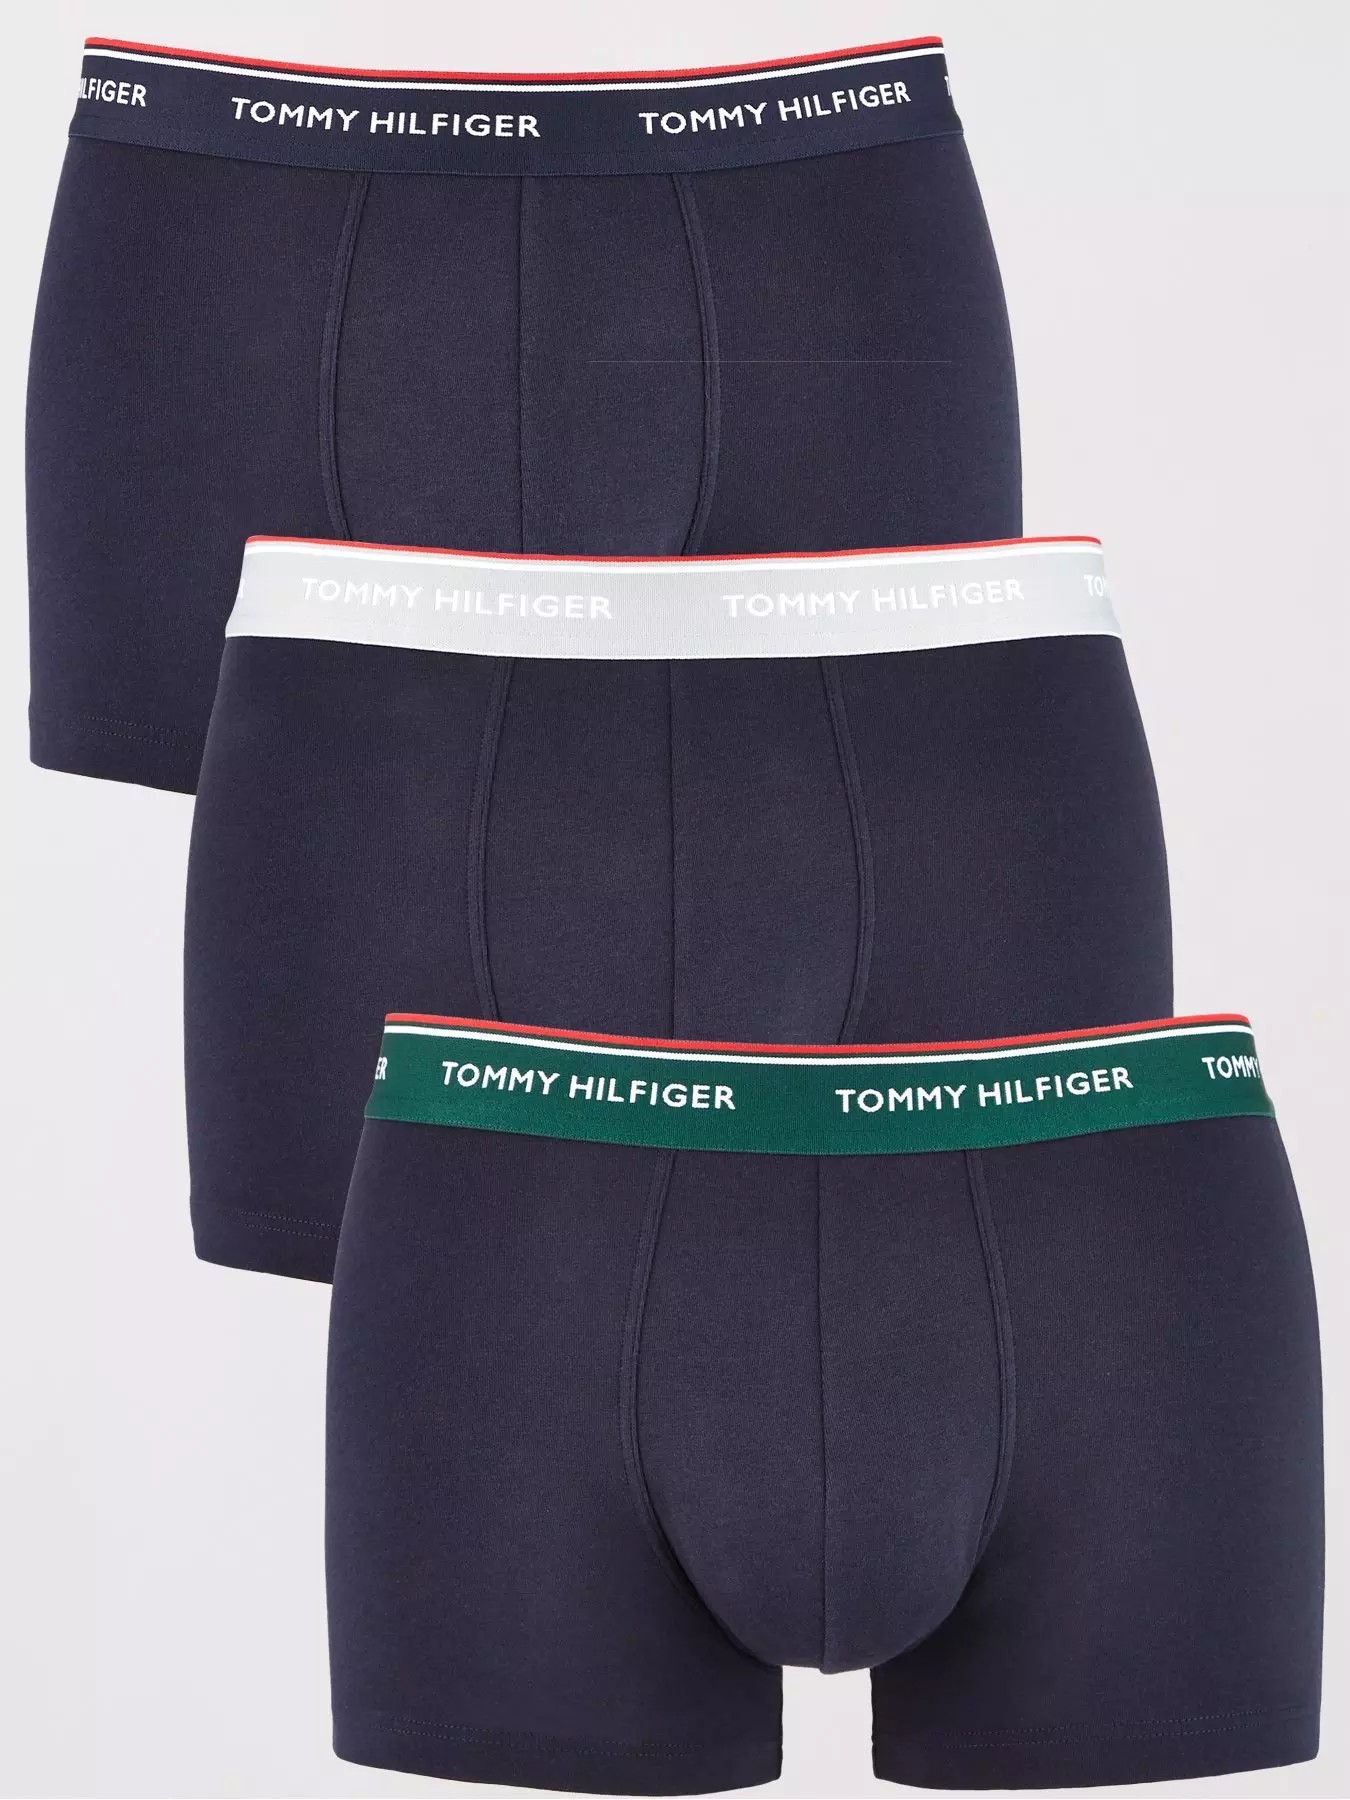 Tommy Hilfiger Mens 3 Pack Cotton Air Underwear Boxer Briefs 453 S